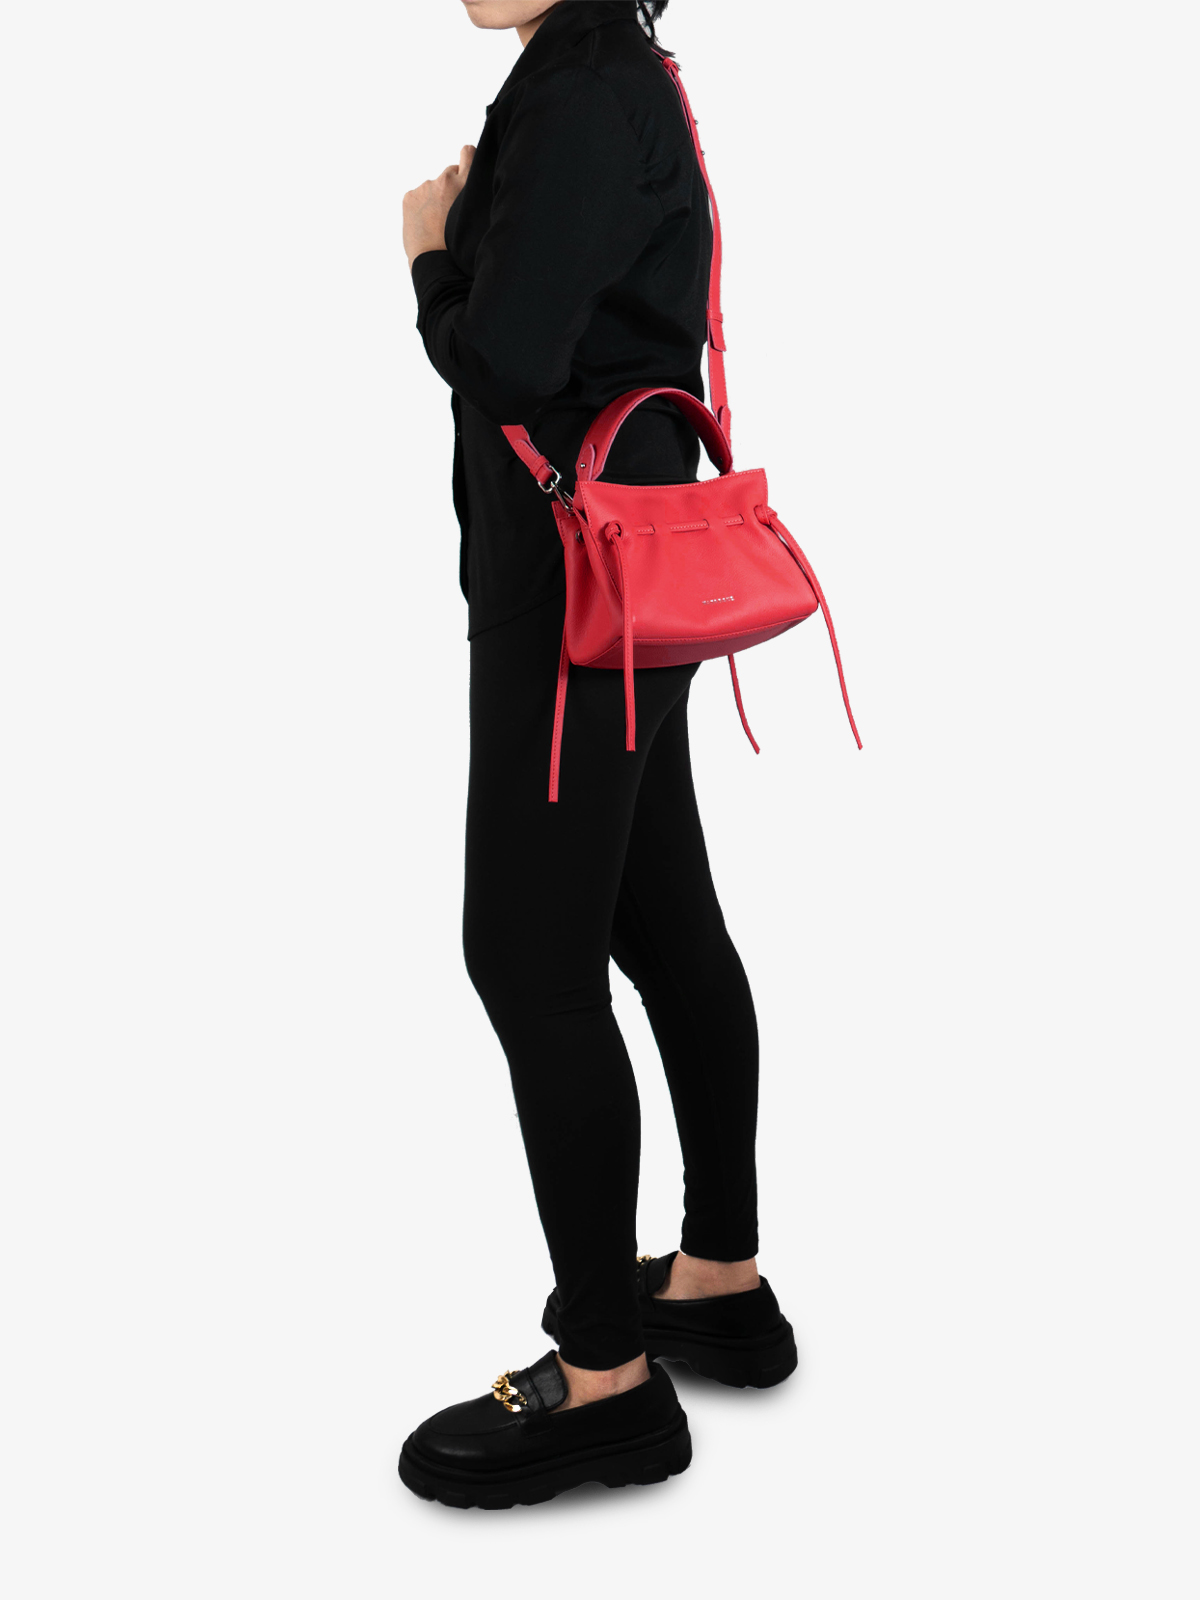 marroque-miniWendy-Scarlet-leatherbag